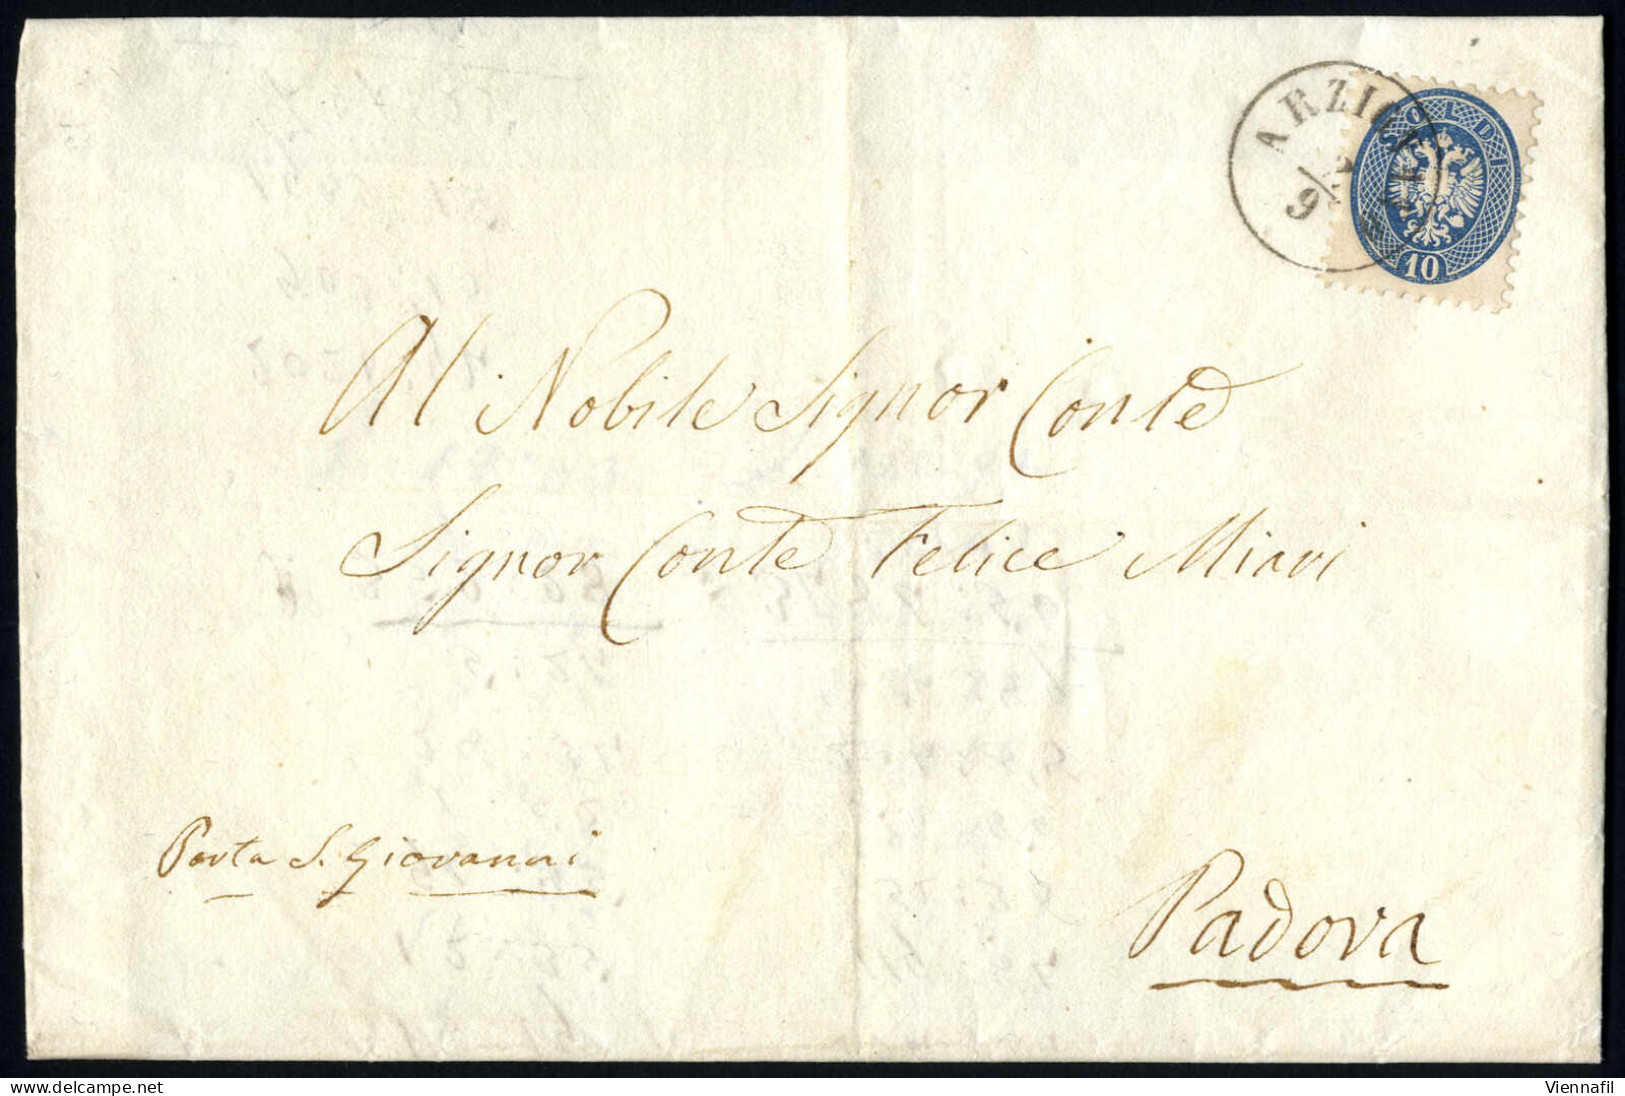 Cover 1866, Lettera Affrancata Con Due 5 Soldi (piccola Piega Angolare) E Due 3 Soldi Spedita Da "ARZIGNANO 13/5" (annul - Lombardije-Venetië